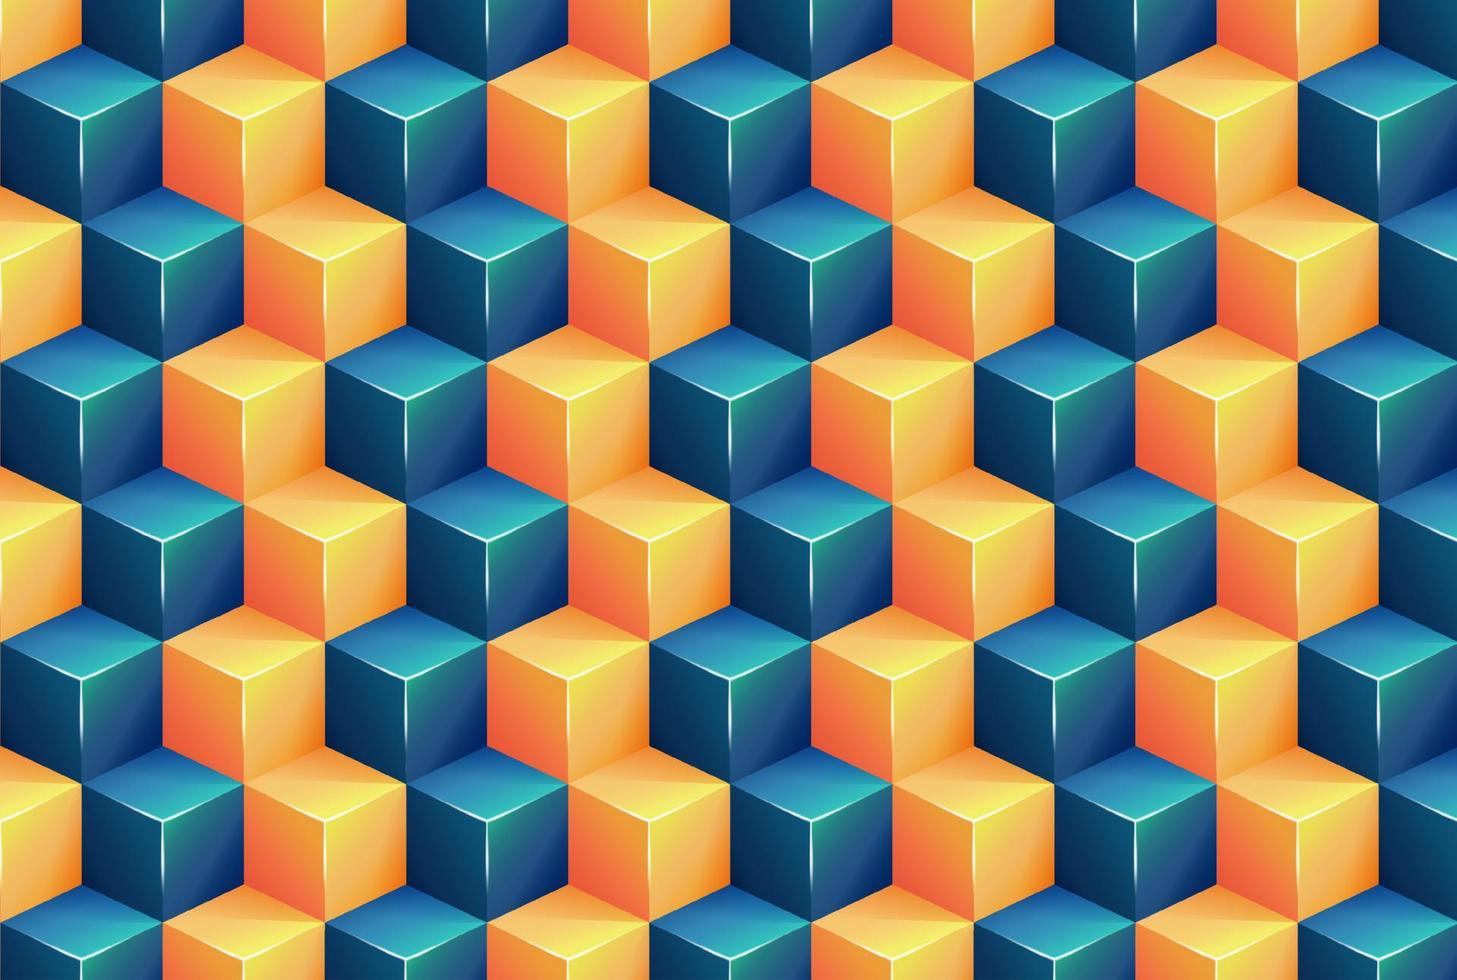 plein patroon achtergrond met blauw en oranje kleur 3d vectoren